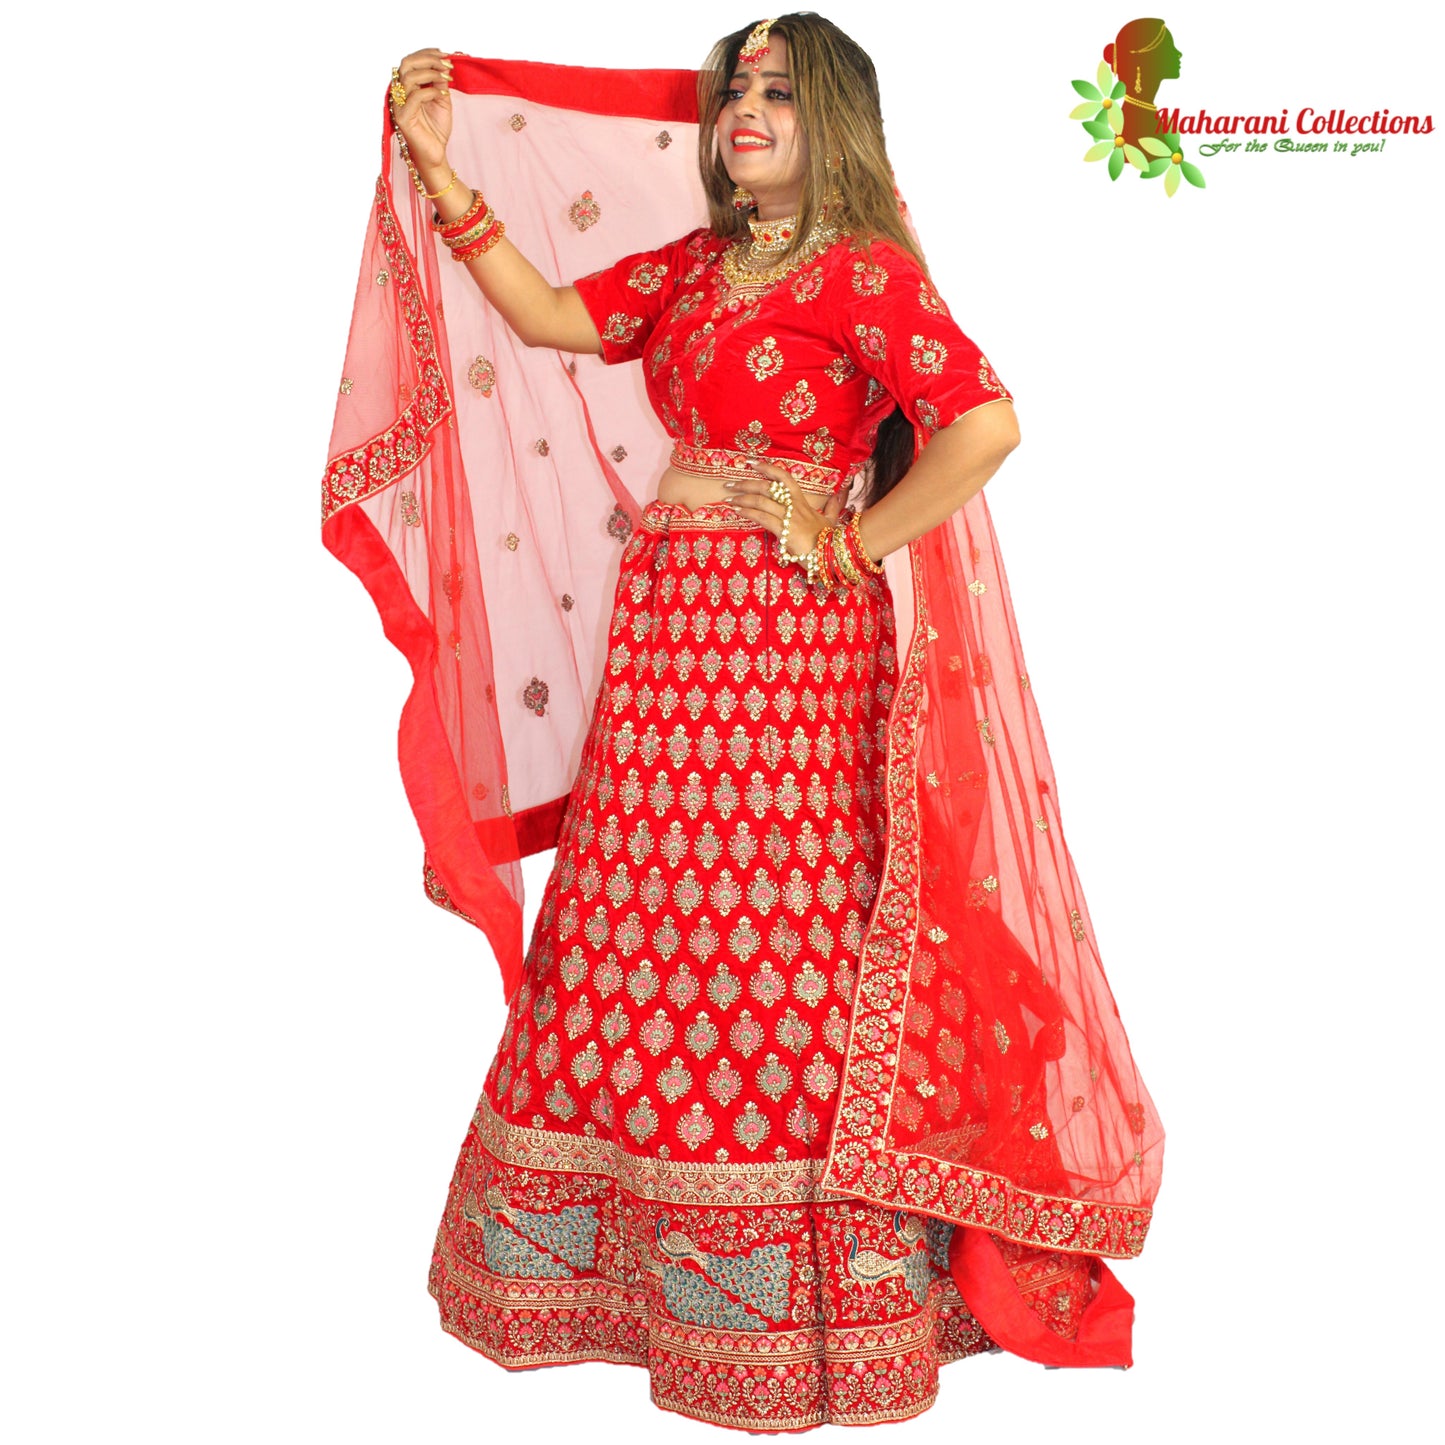 Maharani's Designer Bridal Lehenga - Stunning Red in Velvet (L)